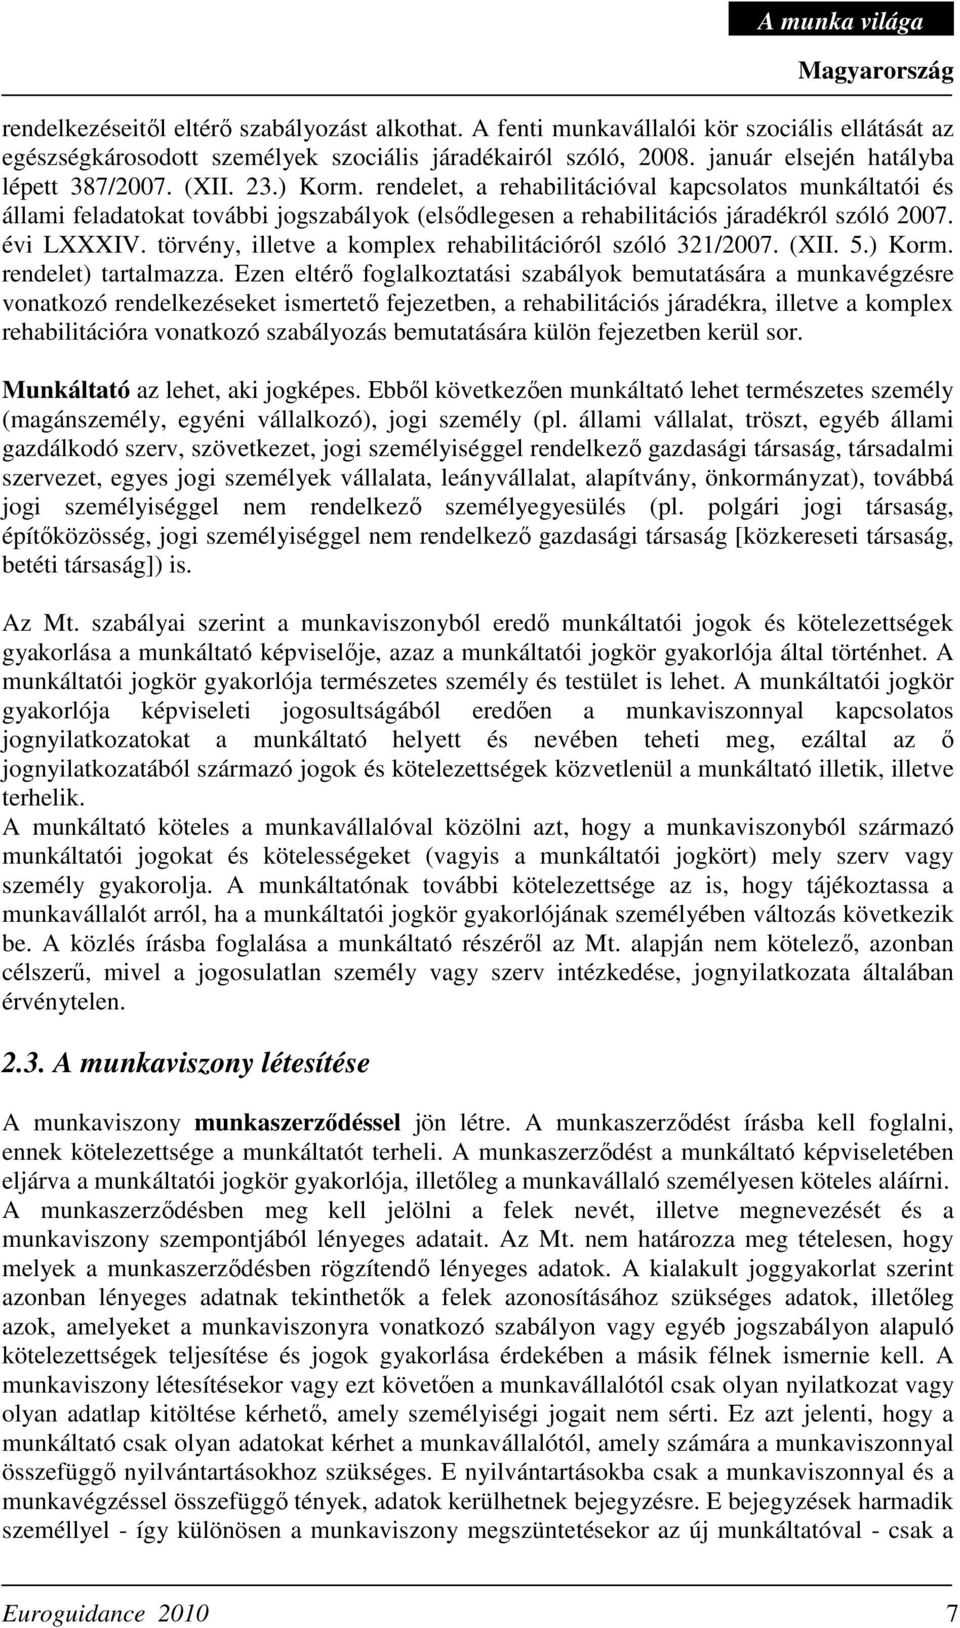 rendelet, a rehabilitációval kapcsolatos munkáltatói és állami feladatokat további jogszabályok (elsıdlegesen a rehabilitációs járadékról szóló 2007. évi LXXXIV.